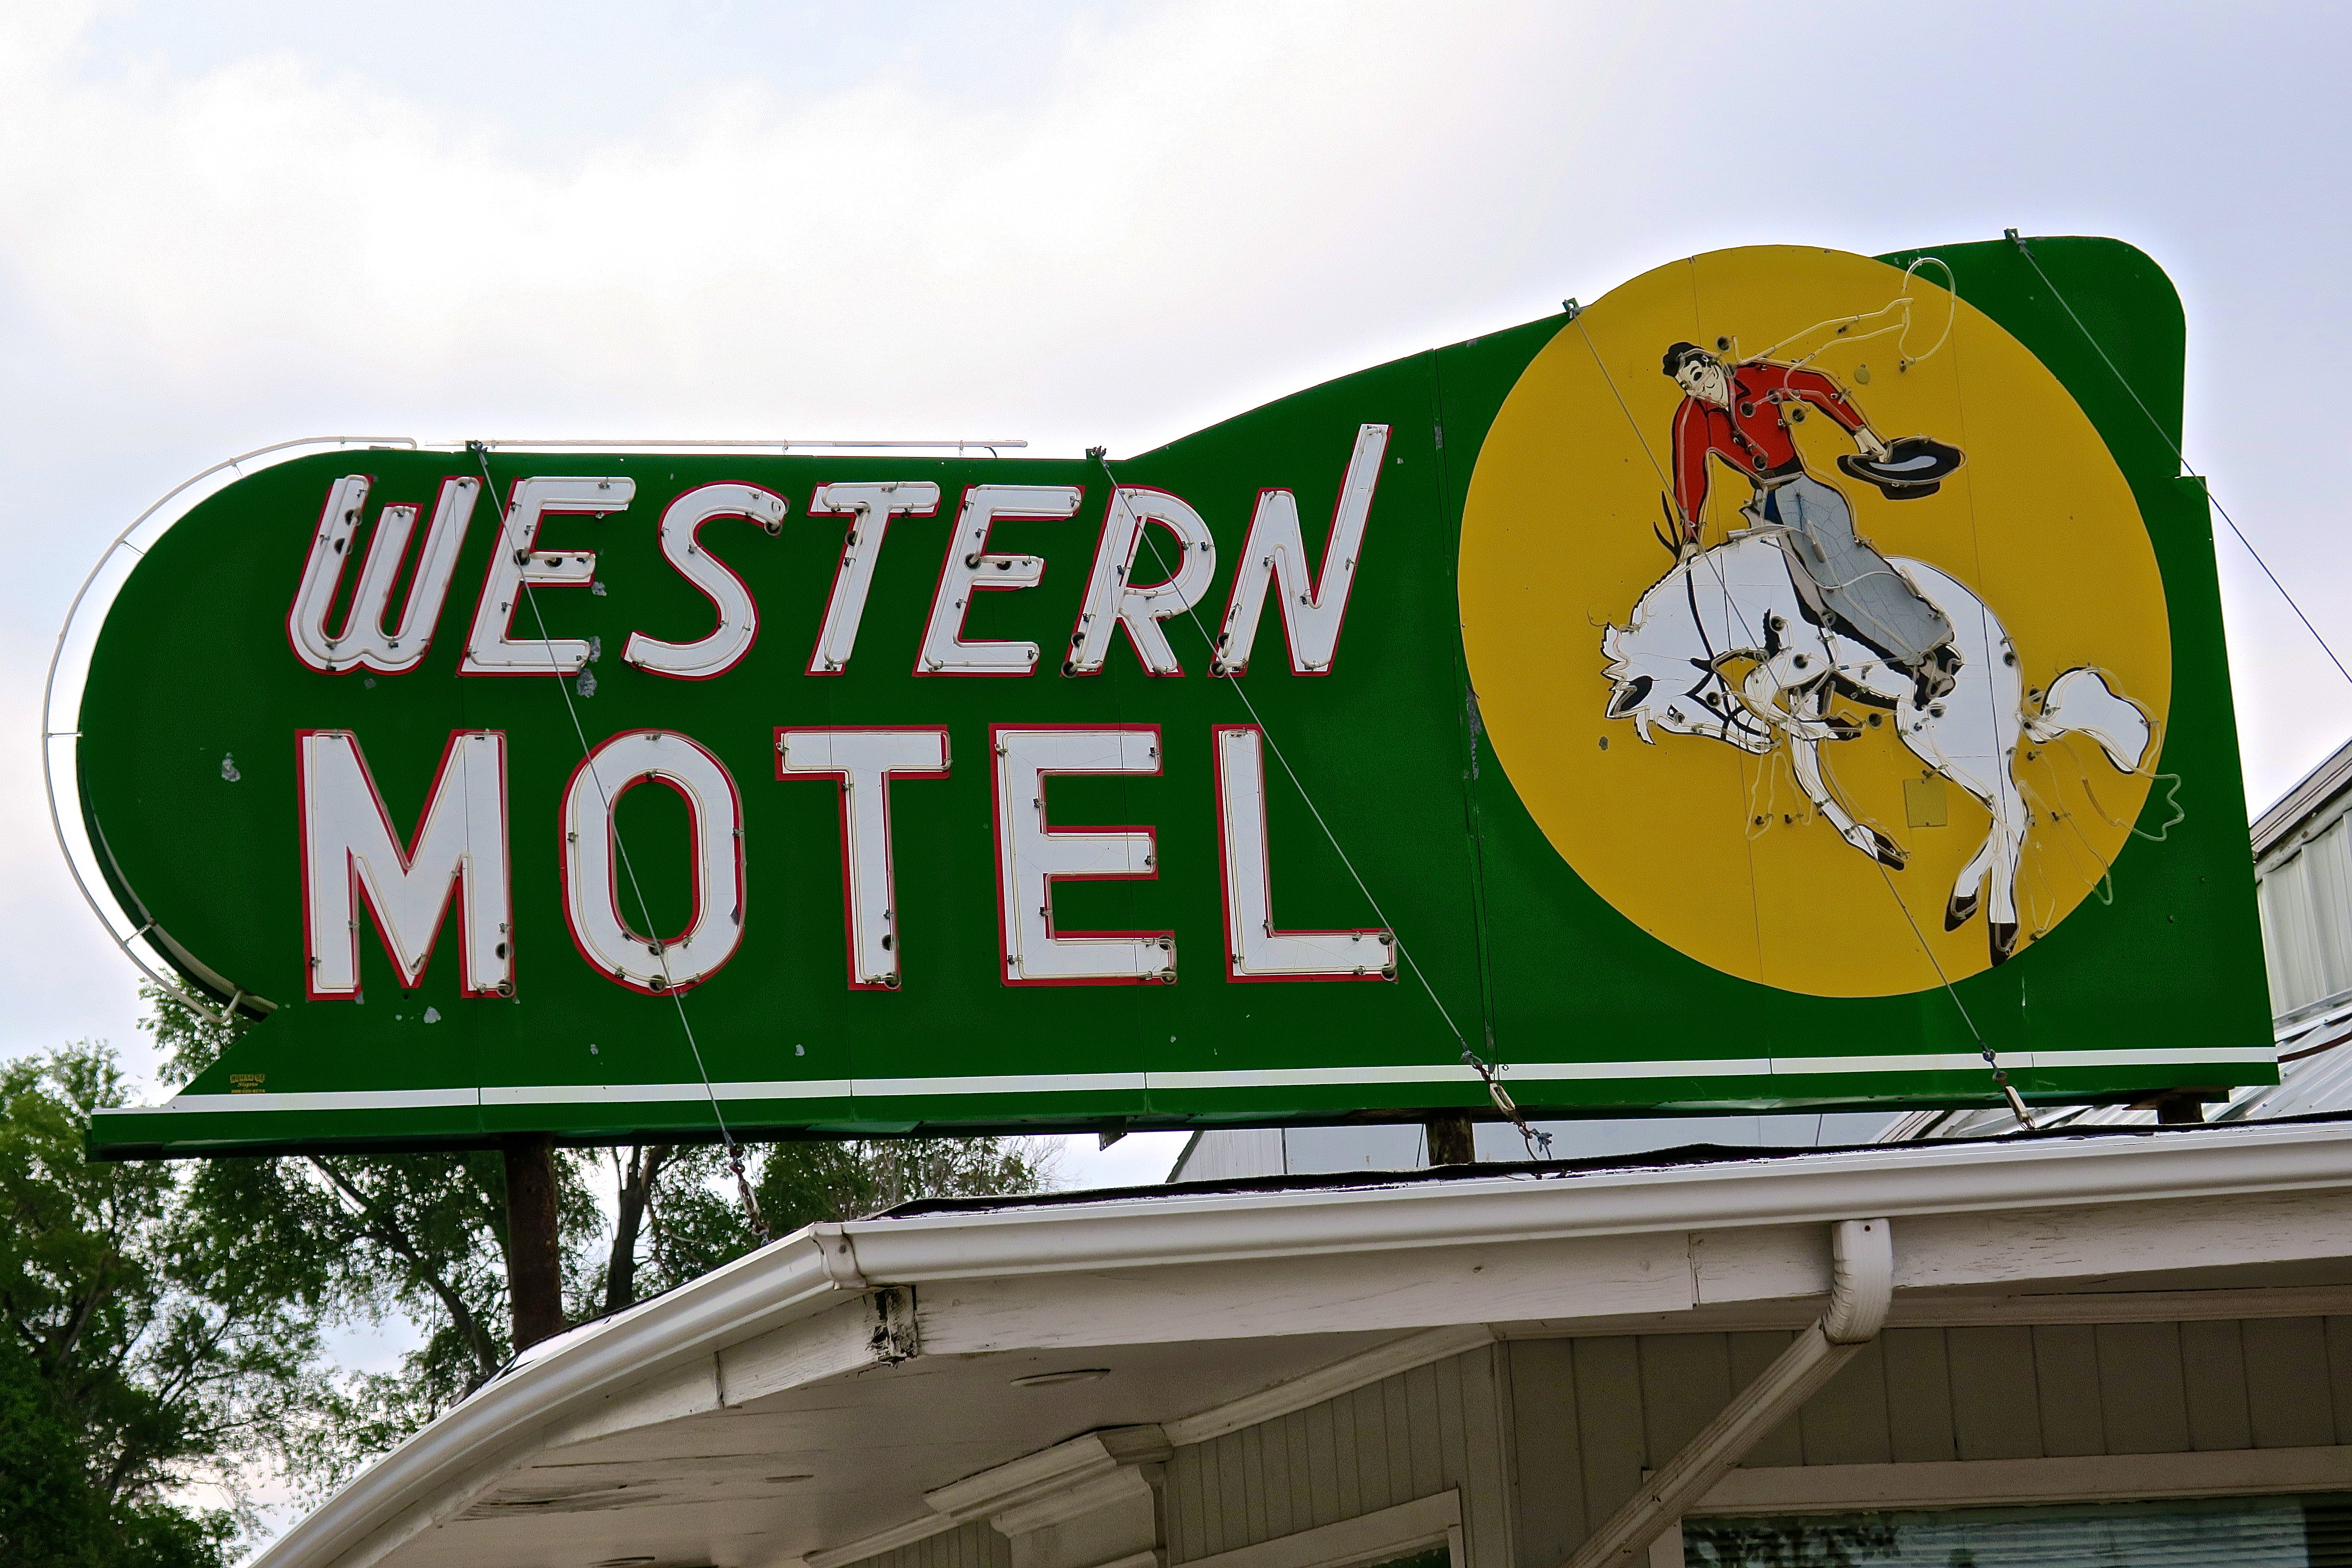 Western Motel - 706 West Rodeo Road Avenue, North Platte, Nebraska U.S.A. - July 4, 2016